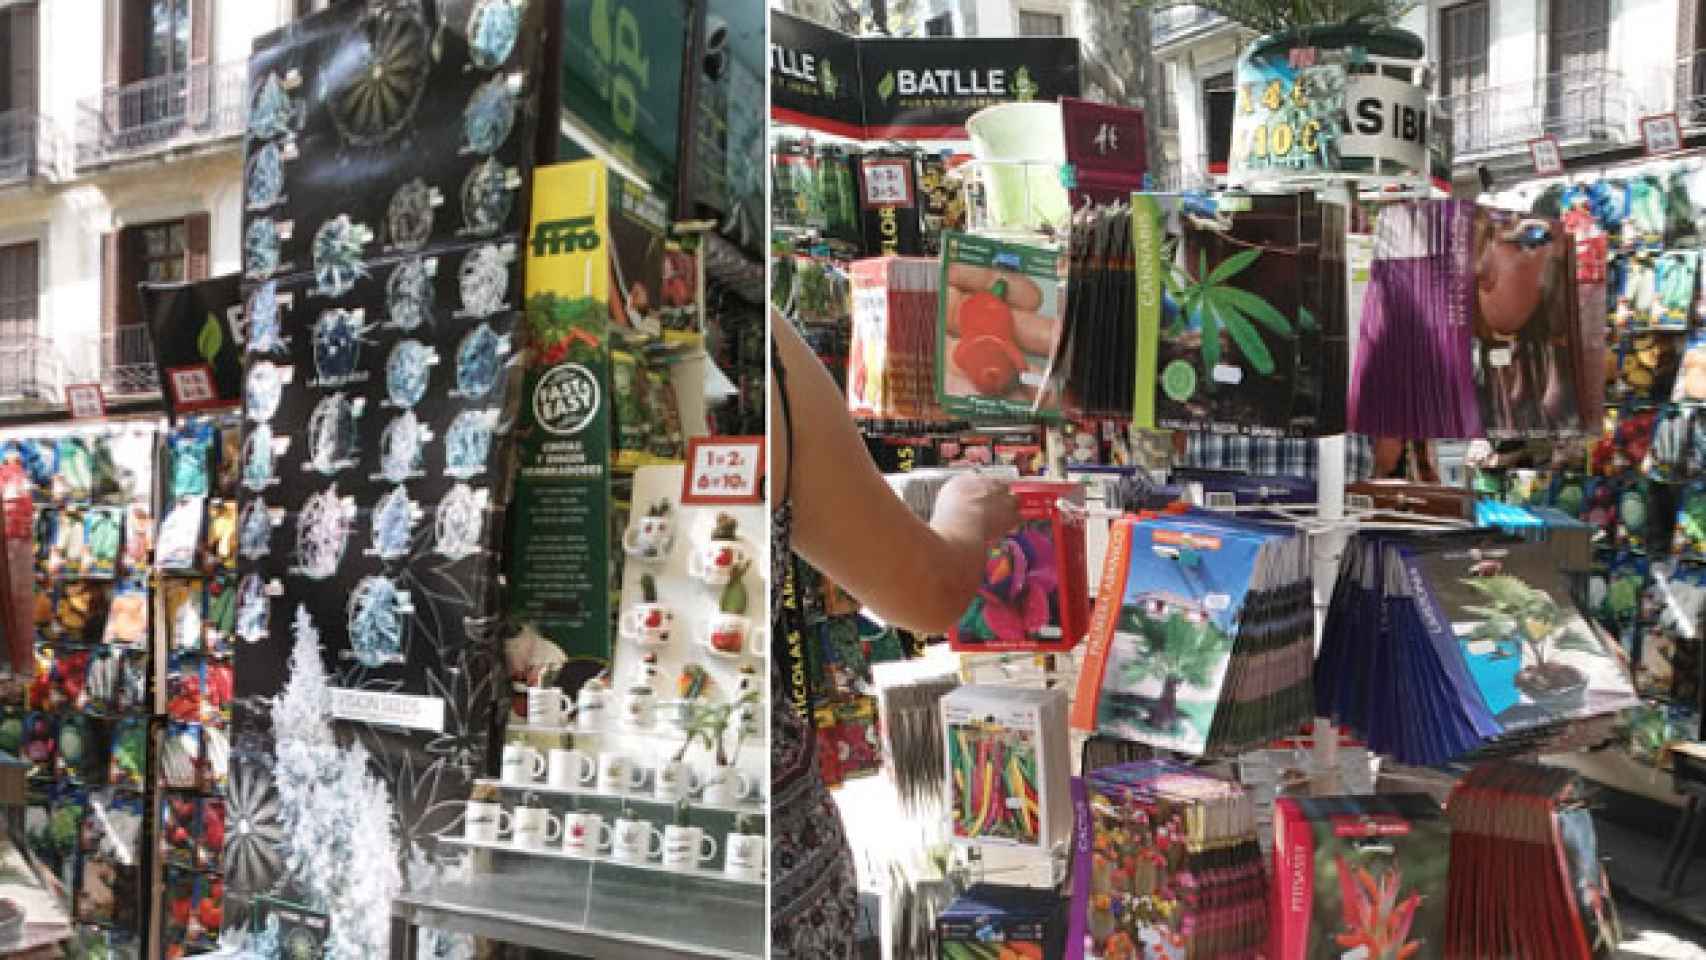 Semillas de cannabis y de plantas alucinógenas a la venta en Las Ramblas./ CG